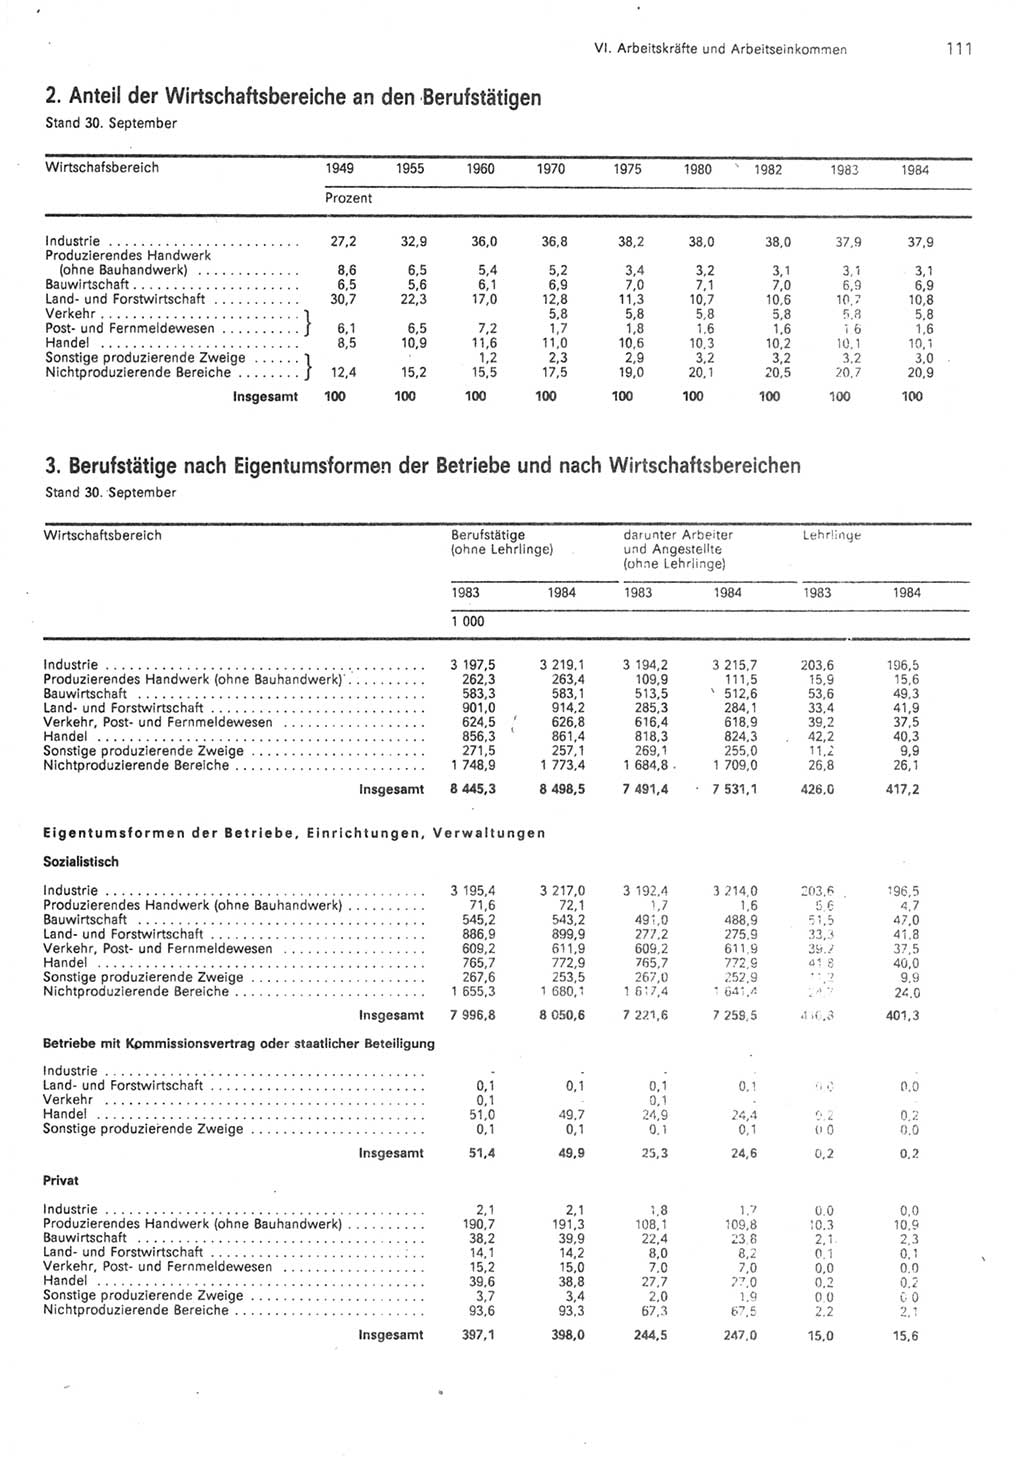 Statistisches Jahrbuch der Deutschen Demokratischen Republik (DDR) 1985, Seite 111 (Stat. Jb. DDR 1985, S. 111)